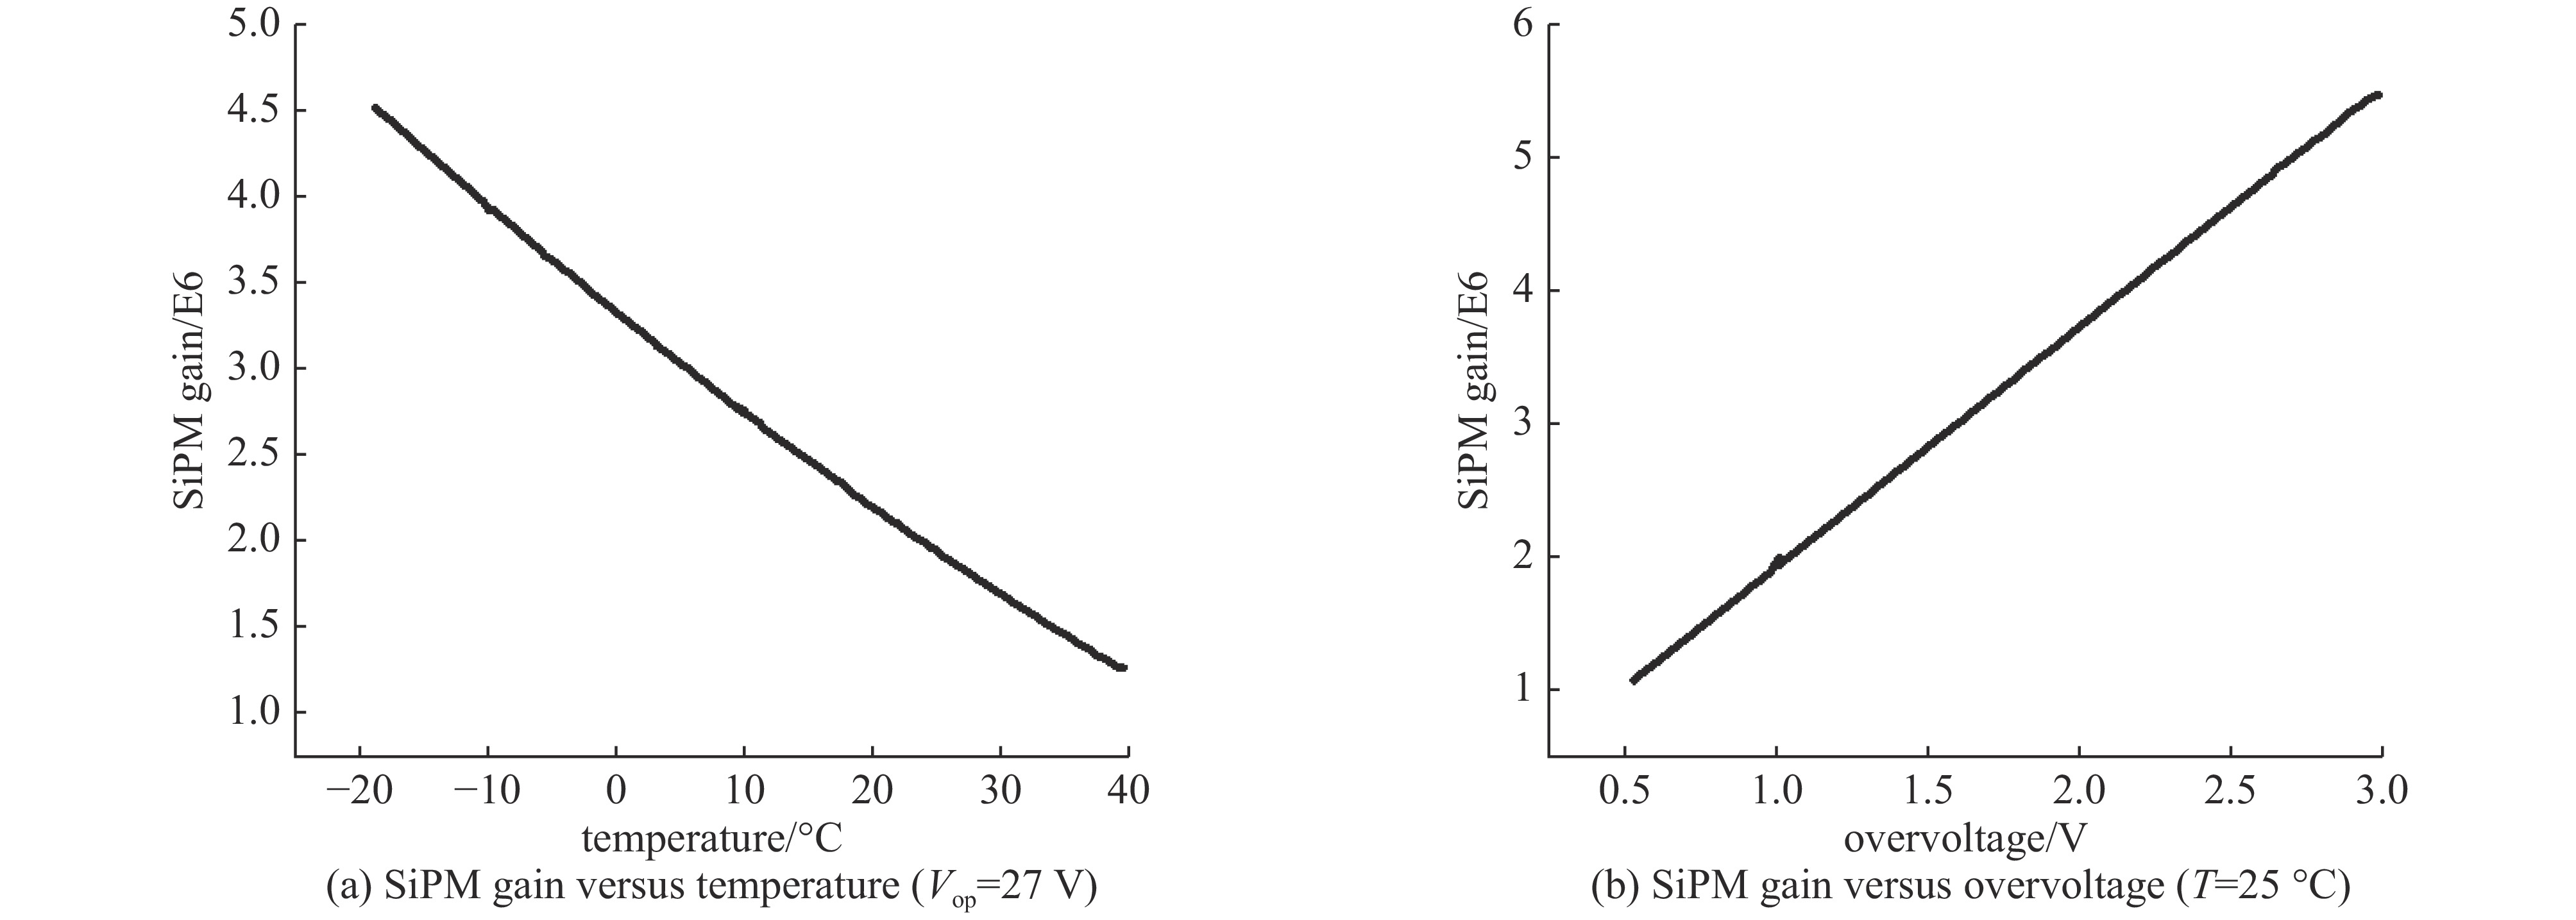 SiPM gain versus temperature and overvoltage